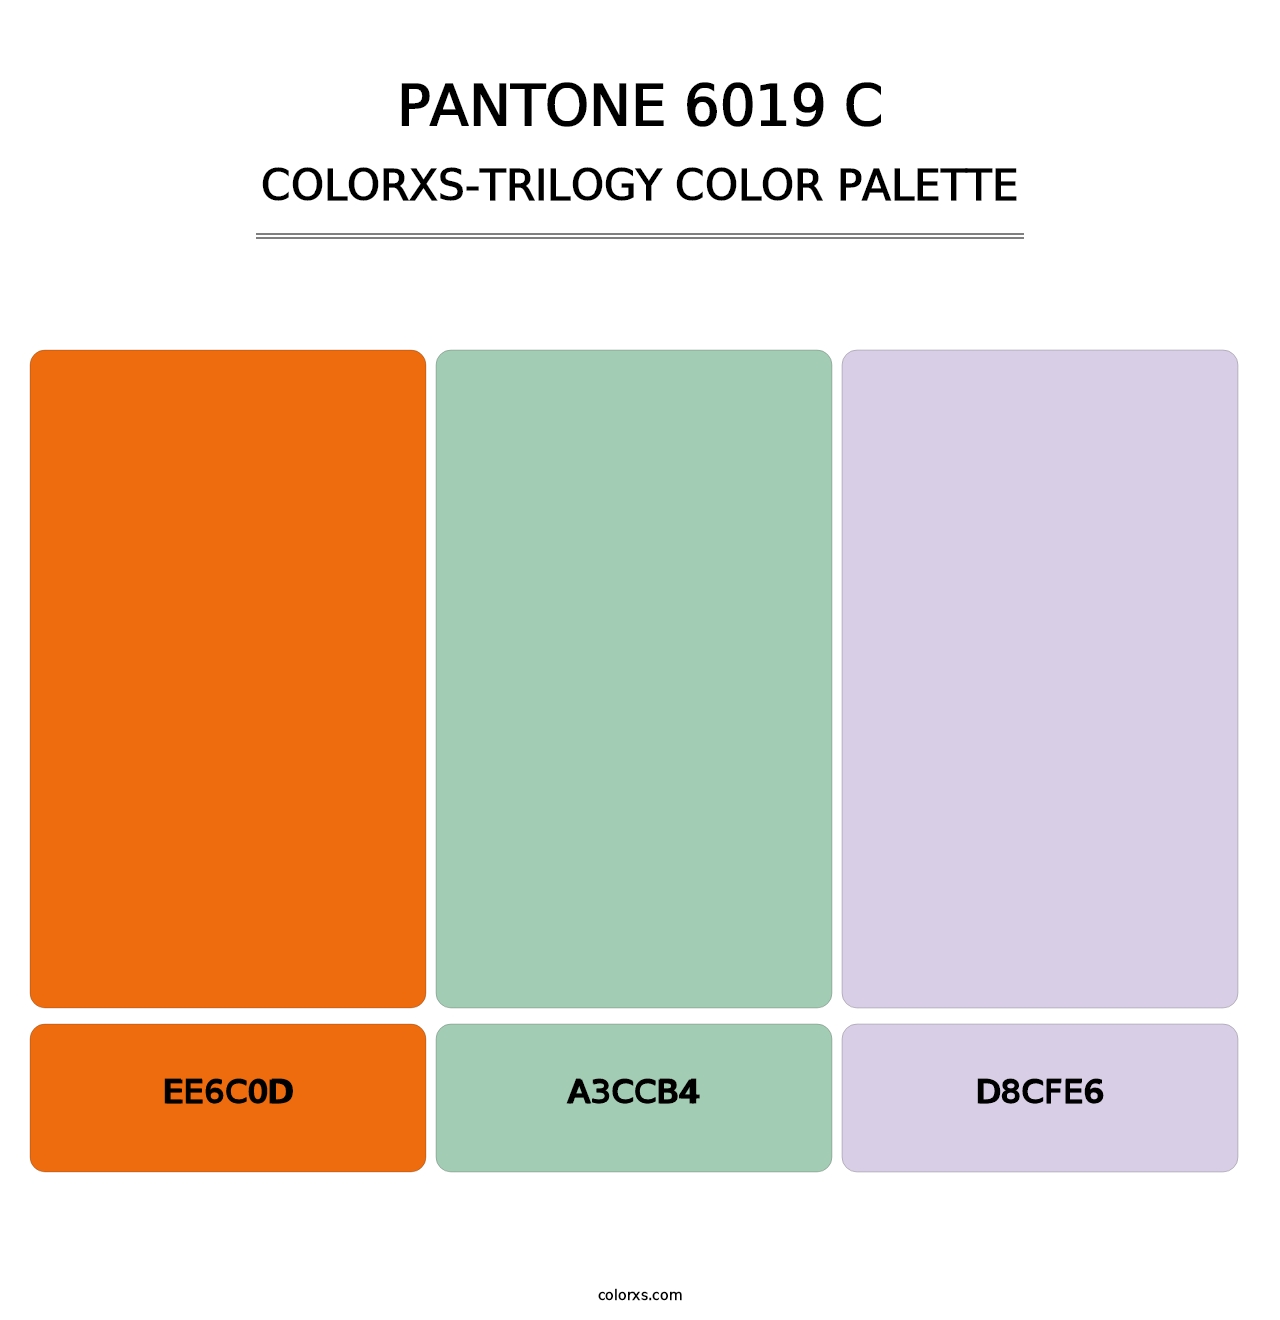 PANTONE 6019 C - Colorxs Trilogy Palette